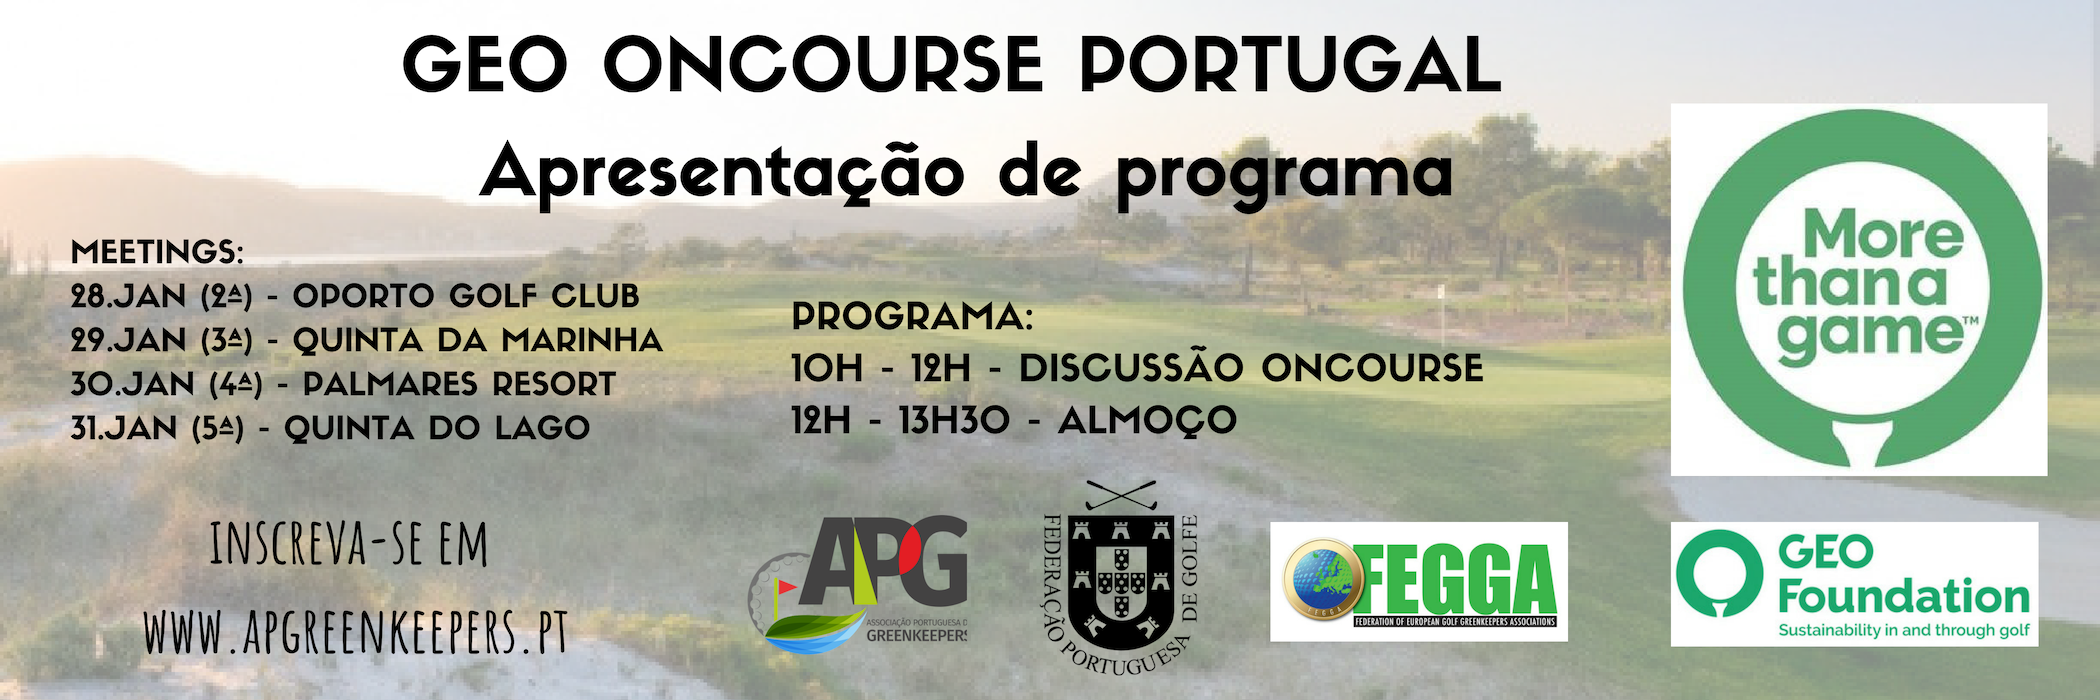 Apresentação de OnCourse Portugal